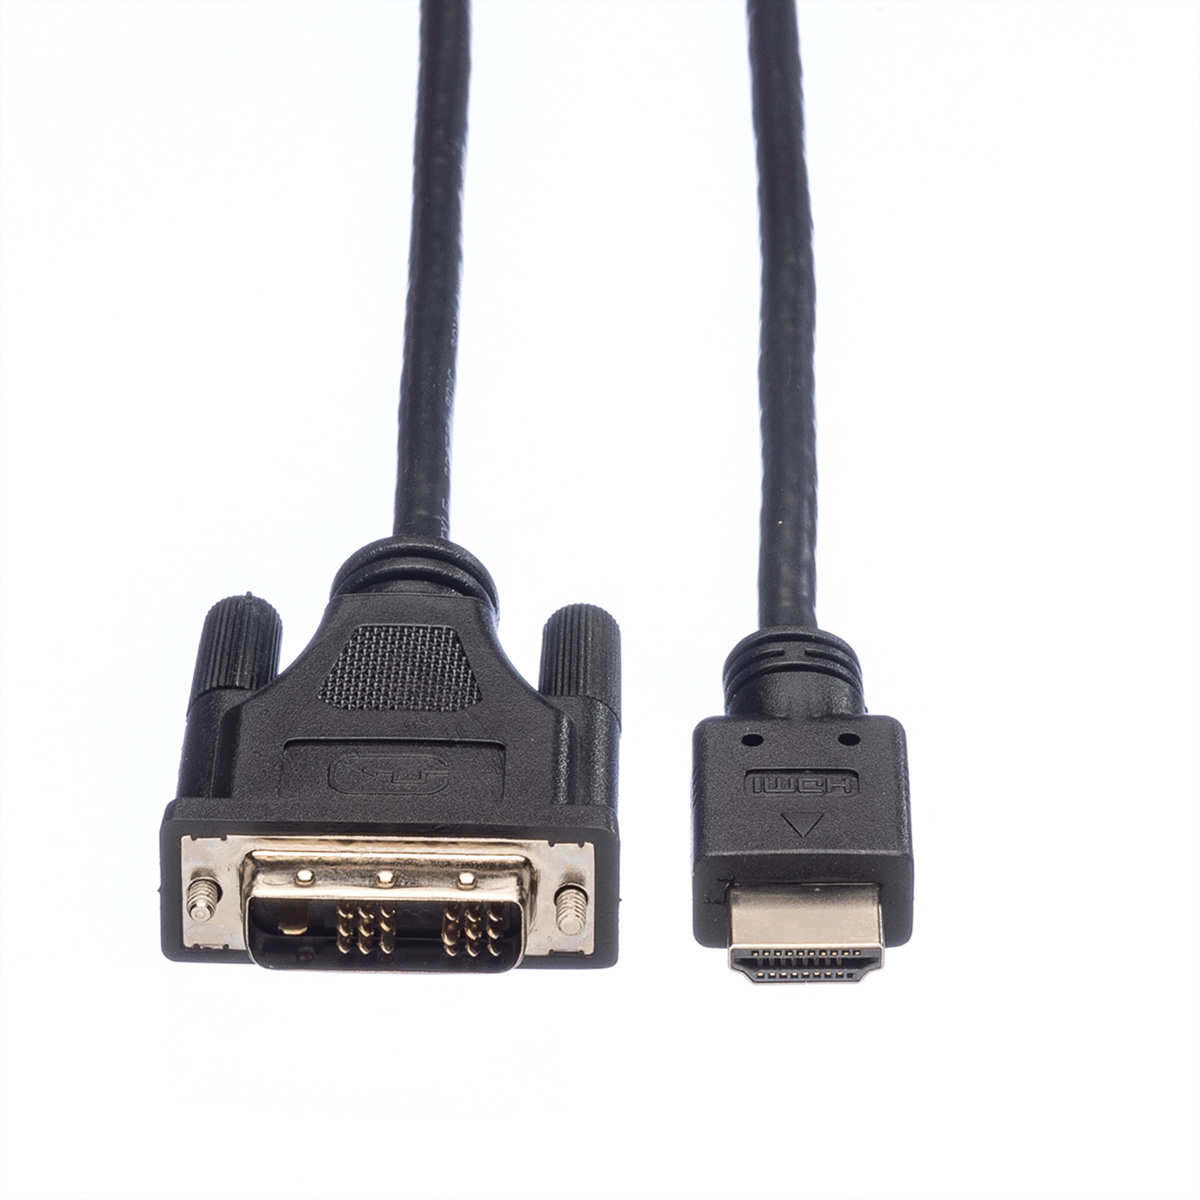 ROLINE Kabel DVI (18+1) ST, - ST m HDMI-DVI-Kabel, 1,5 HDMI